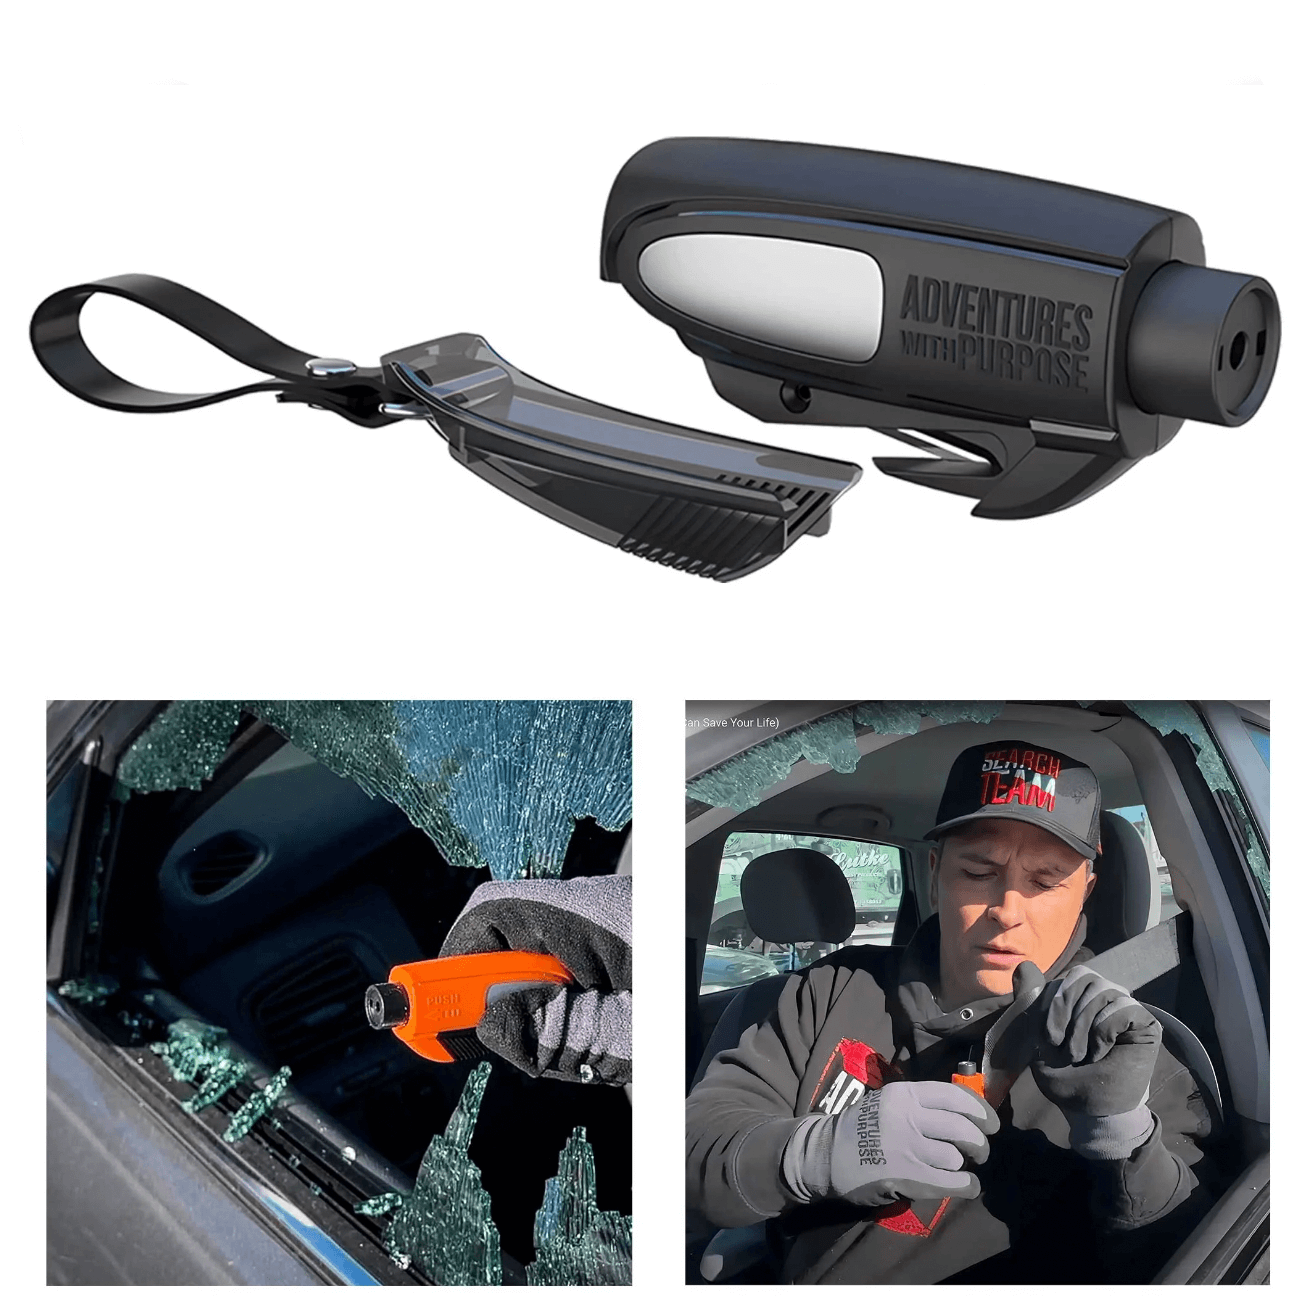 2-in-1 Emergency Window Breaker & Seatbelt Cutter